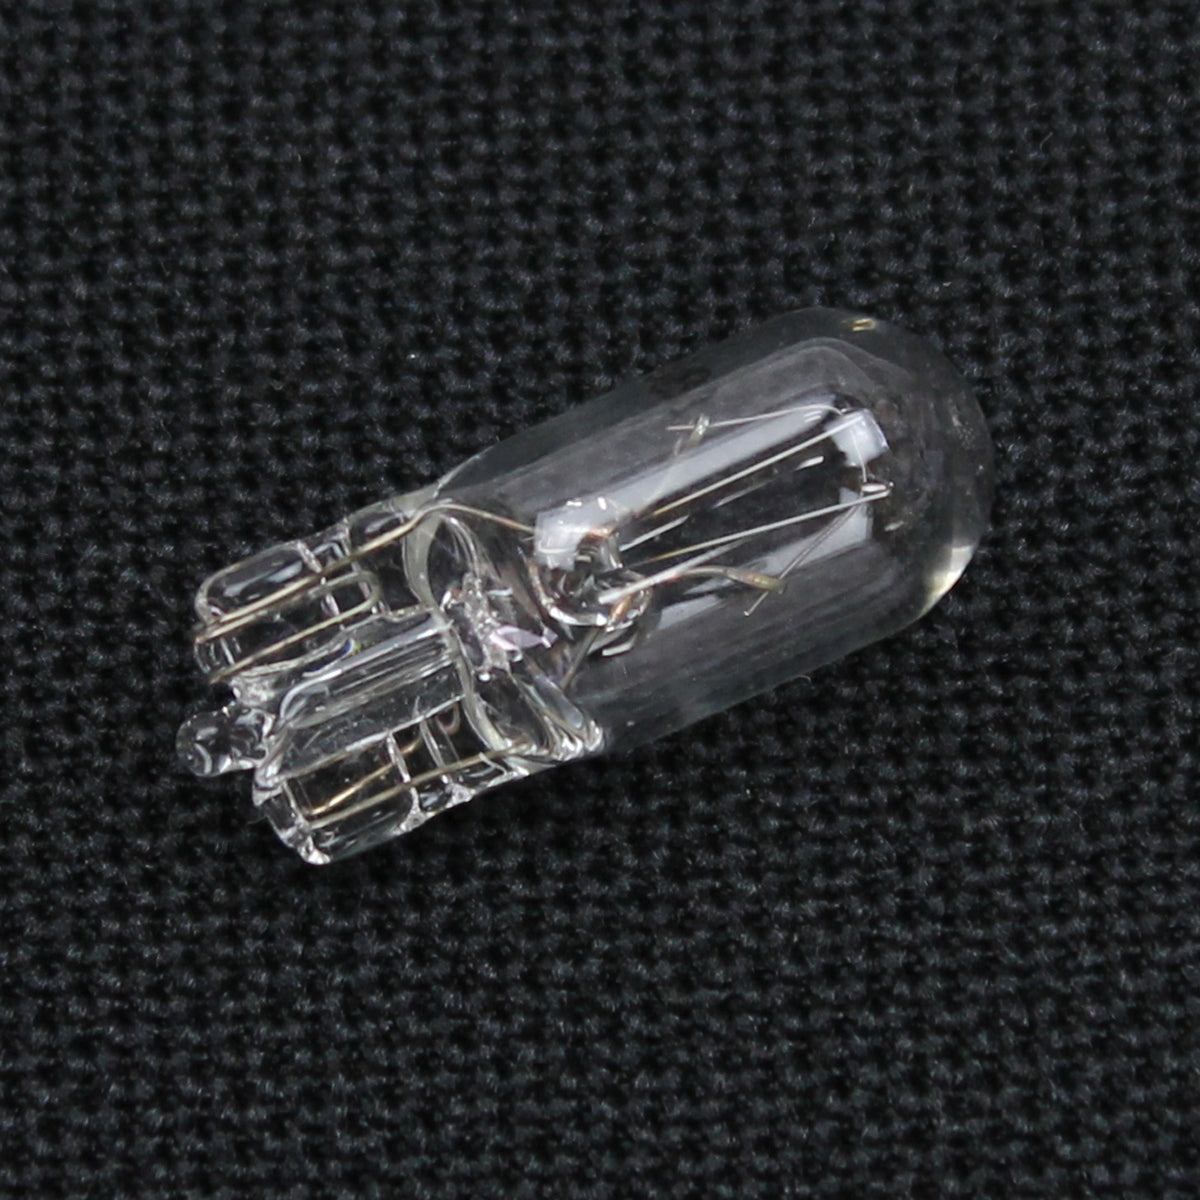 fj40 dash light bulb